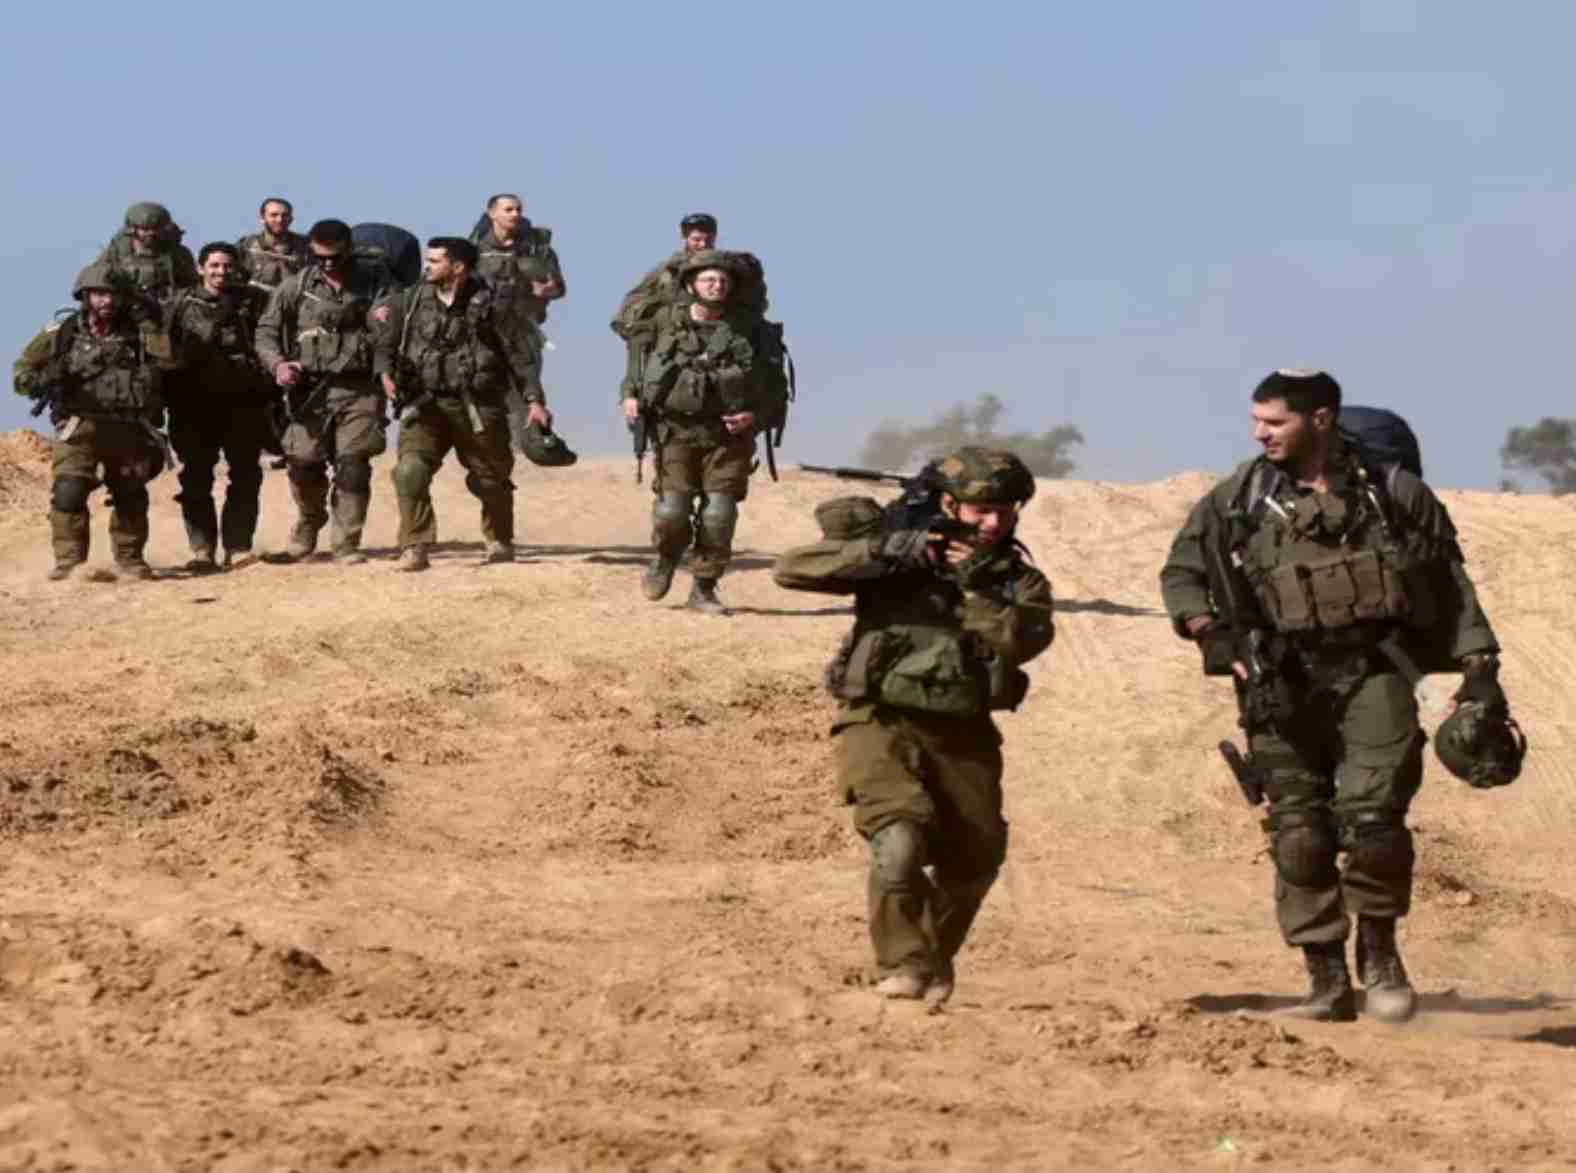 Justiça restaurada: operação das forças de defesa de Israel neutraliza líderes do Hamas responsáveis por atrocidades